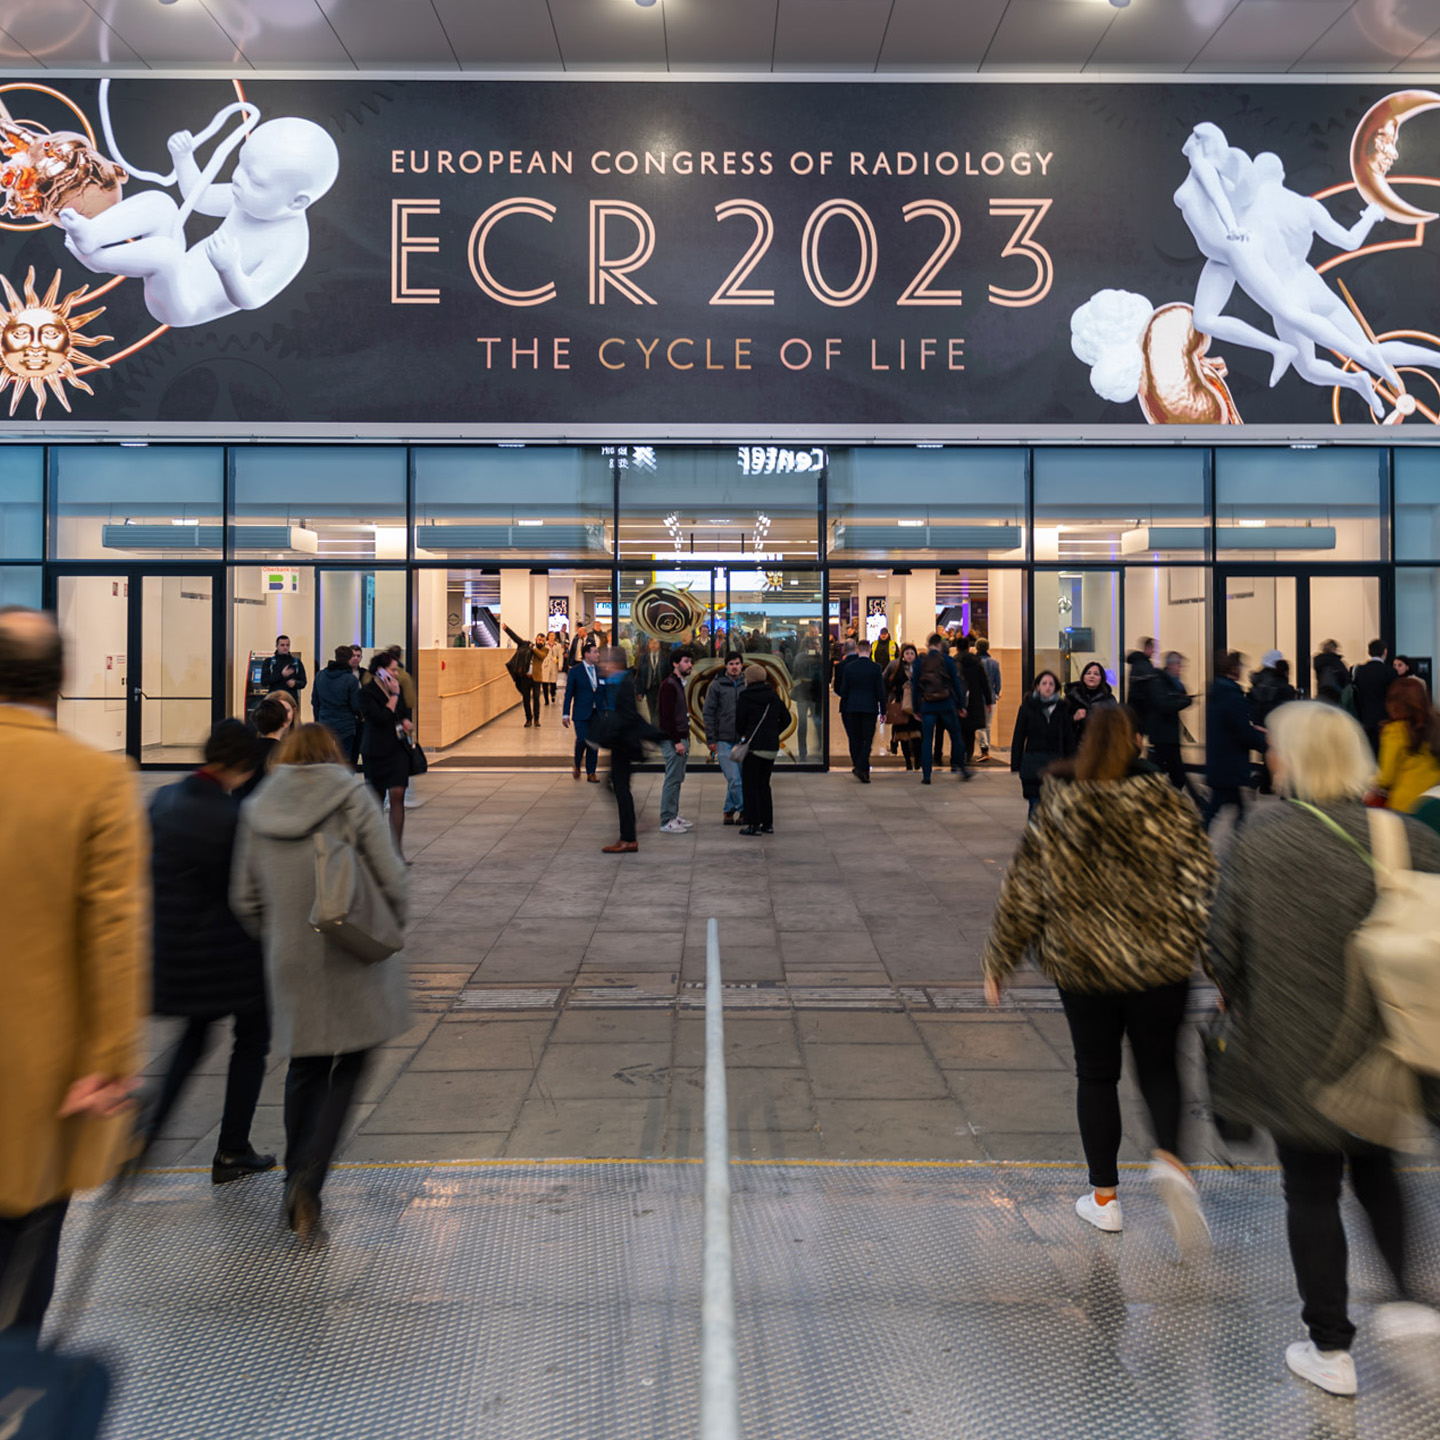 Foto: Menschen vor einem glaesernen Eingang mit dunkler Anzeige ECR 2023